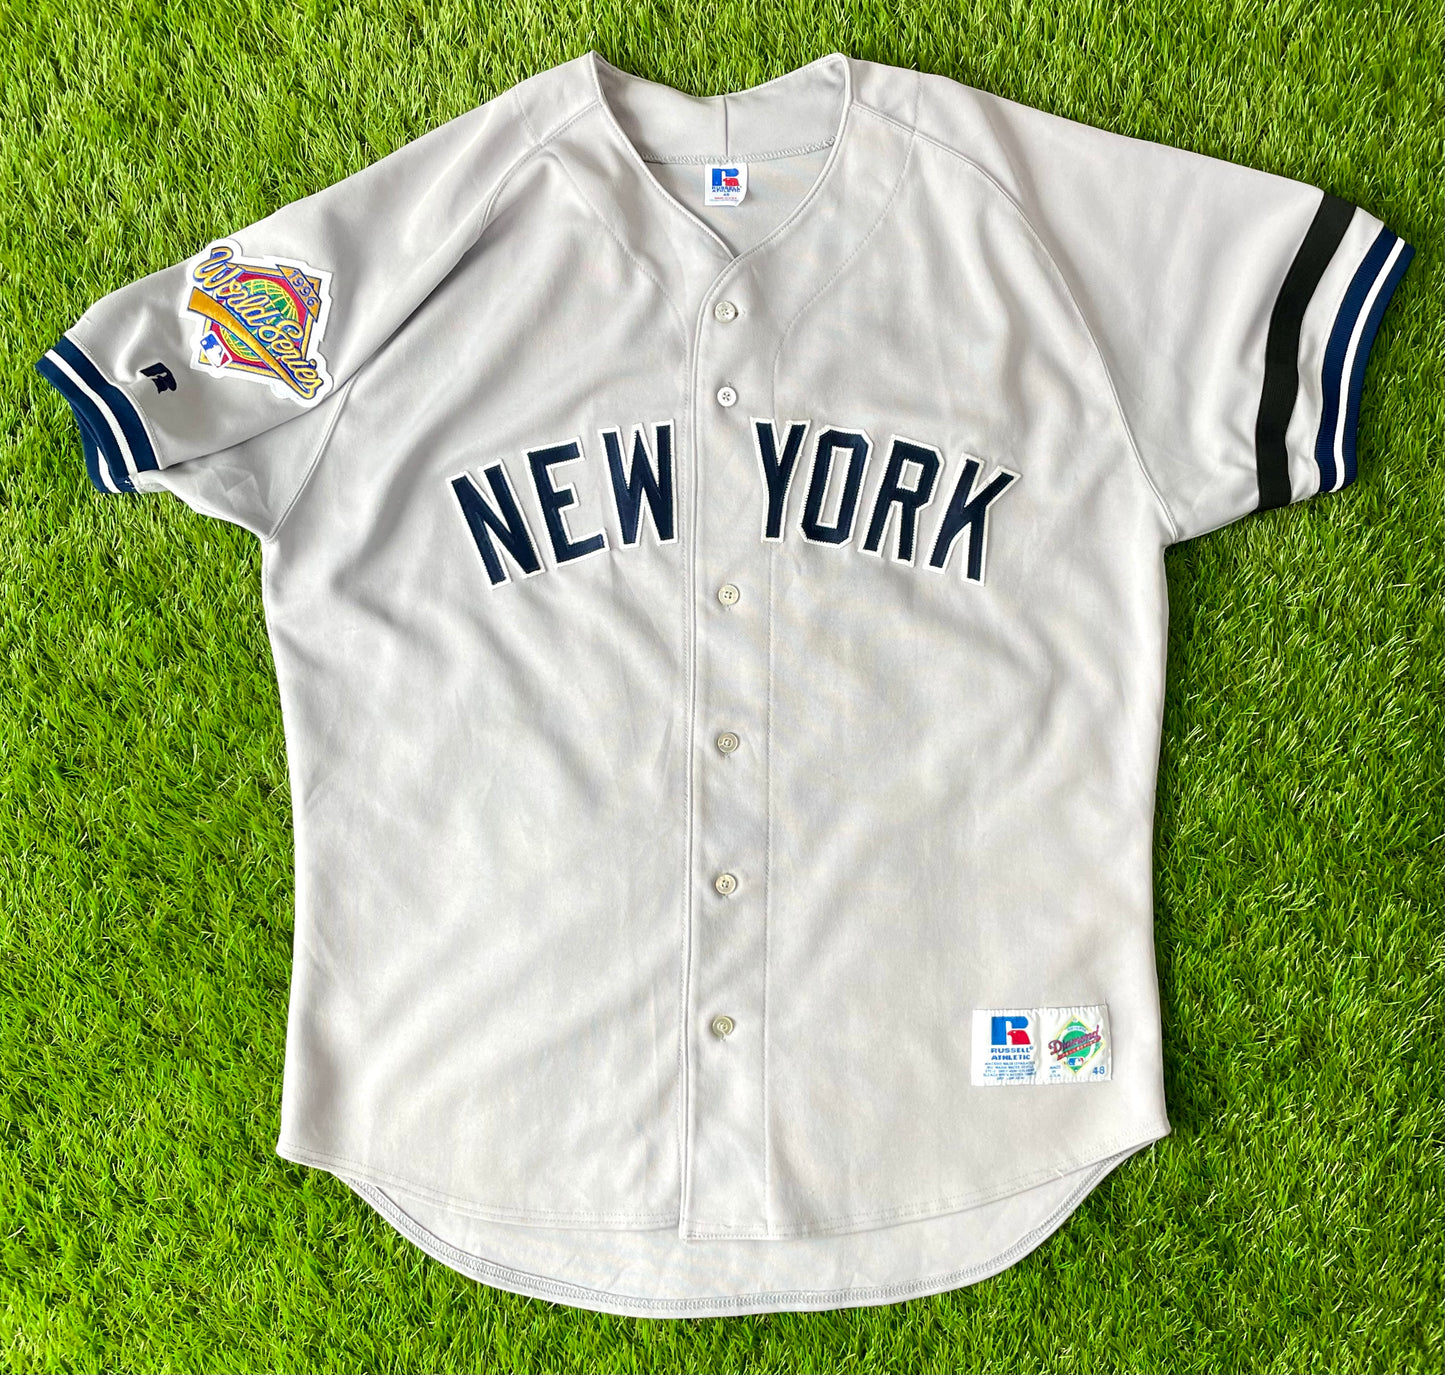 Official Derek Jeter New York Yankees Jerseys, Yankees Derek Jeter Baseball  Jerseys, Uniforms